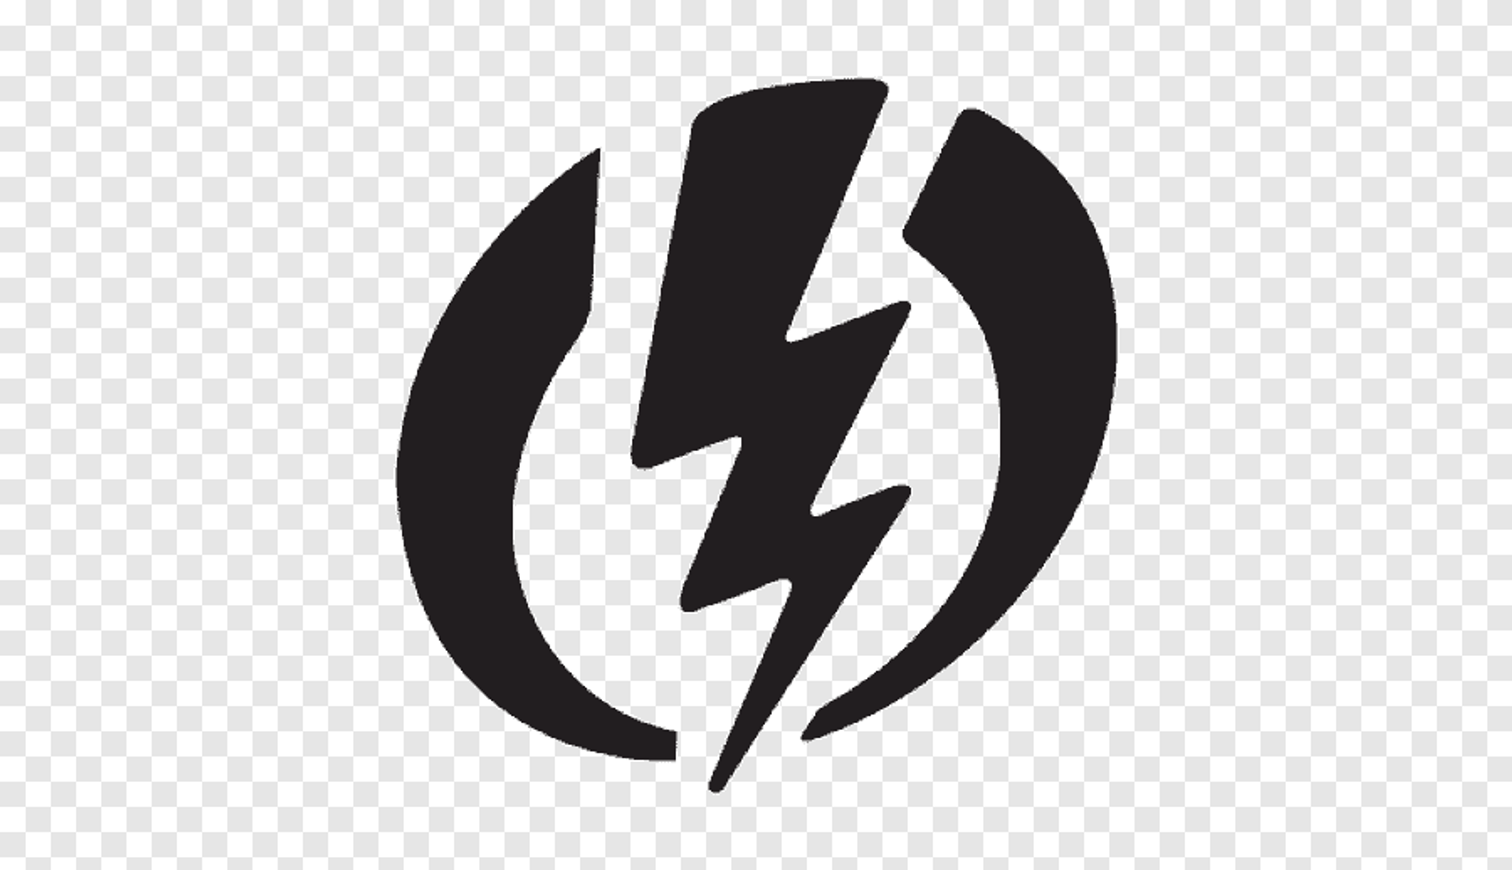 Elektriciteitswerken nalli logo